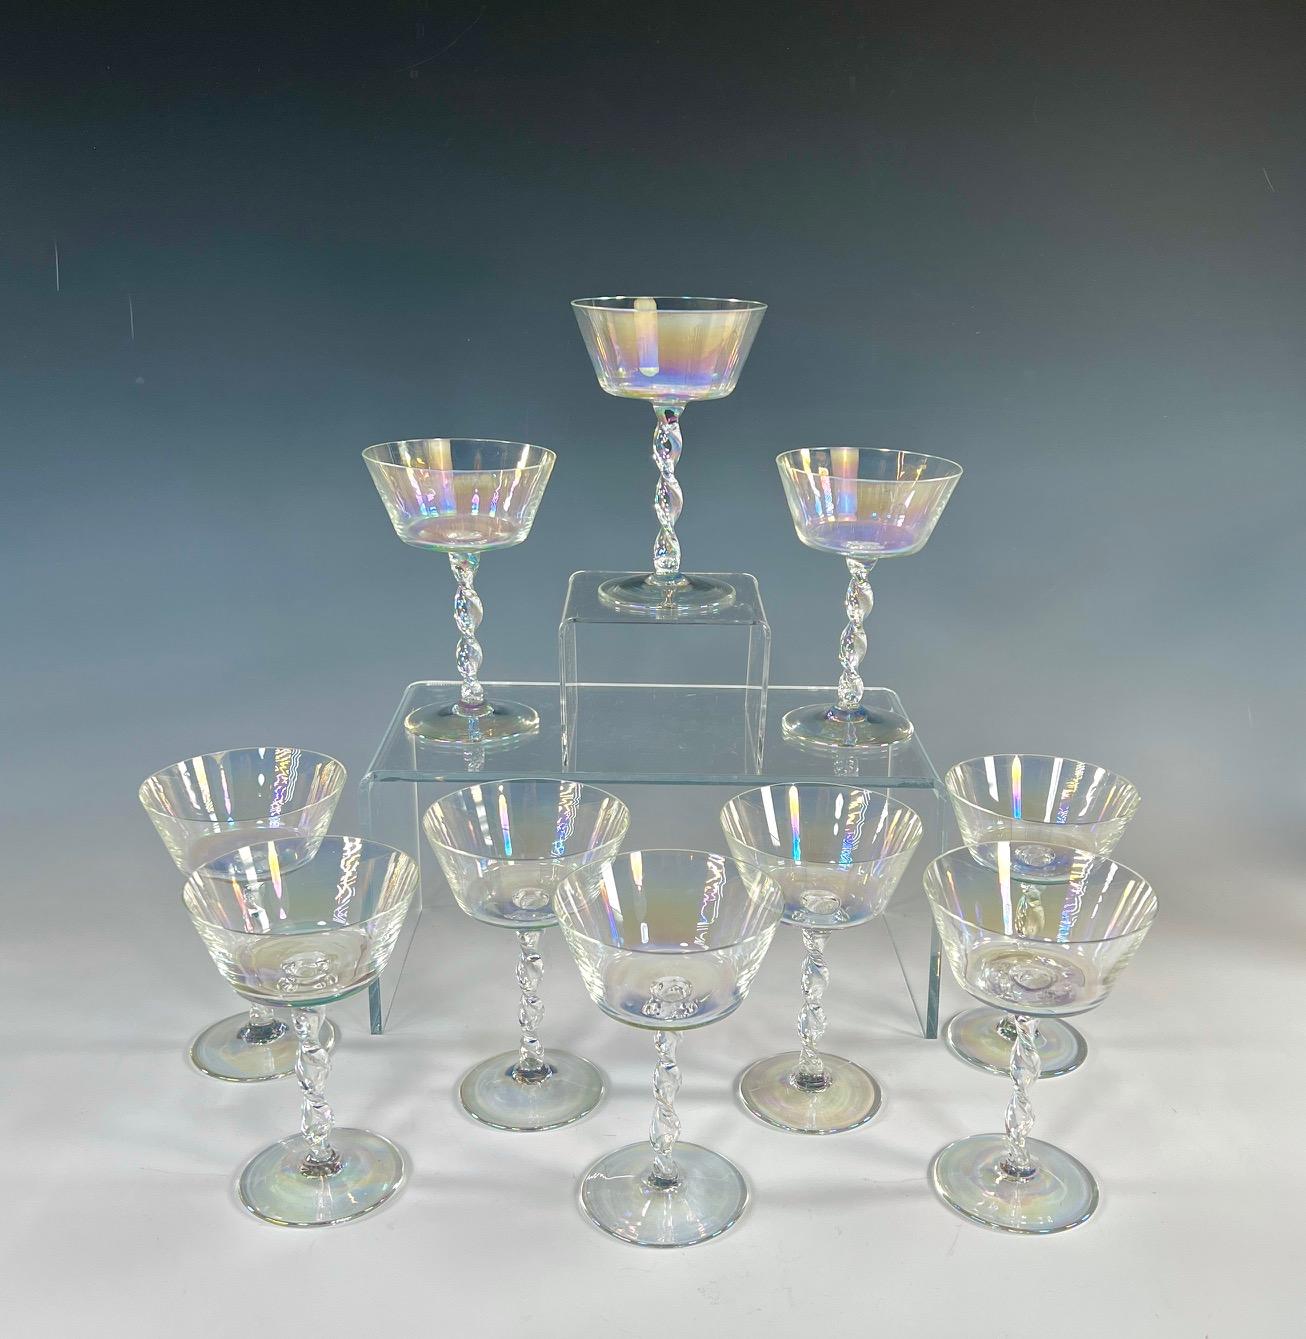 Dieses erstaunliche Set aus 11 mundgeblasenen Champagnergläsern aus Kristall wird Sie begeistern, egal ob es mit Ihrem Lieblingschampagner oder -cocktail gefüllt ist oder nur auf einem Regal steht und das Licht einfängt. Der schimmernde,